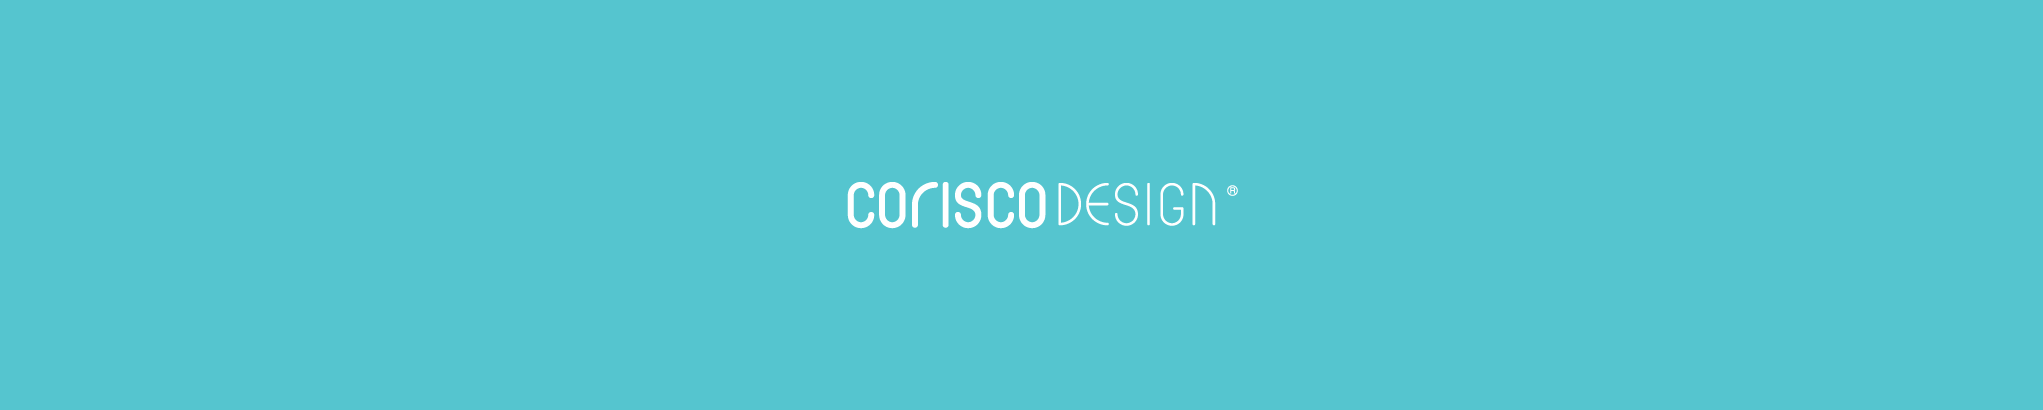 Corisco Design's profile banner